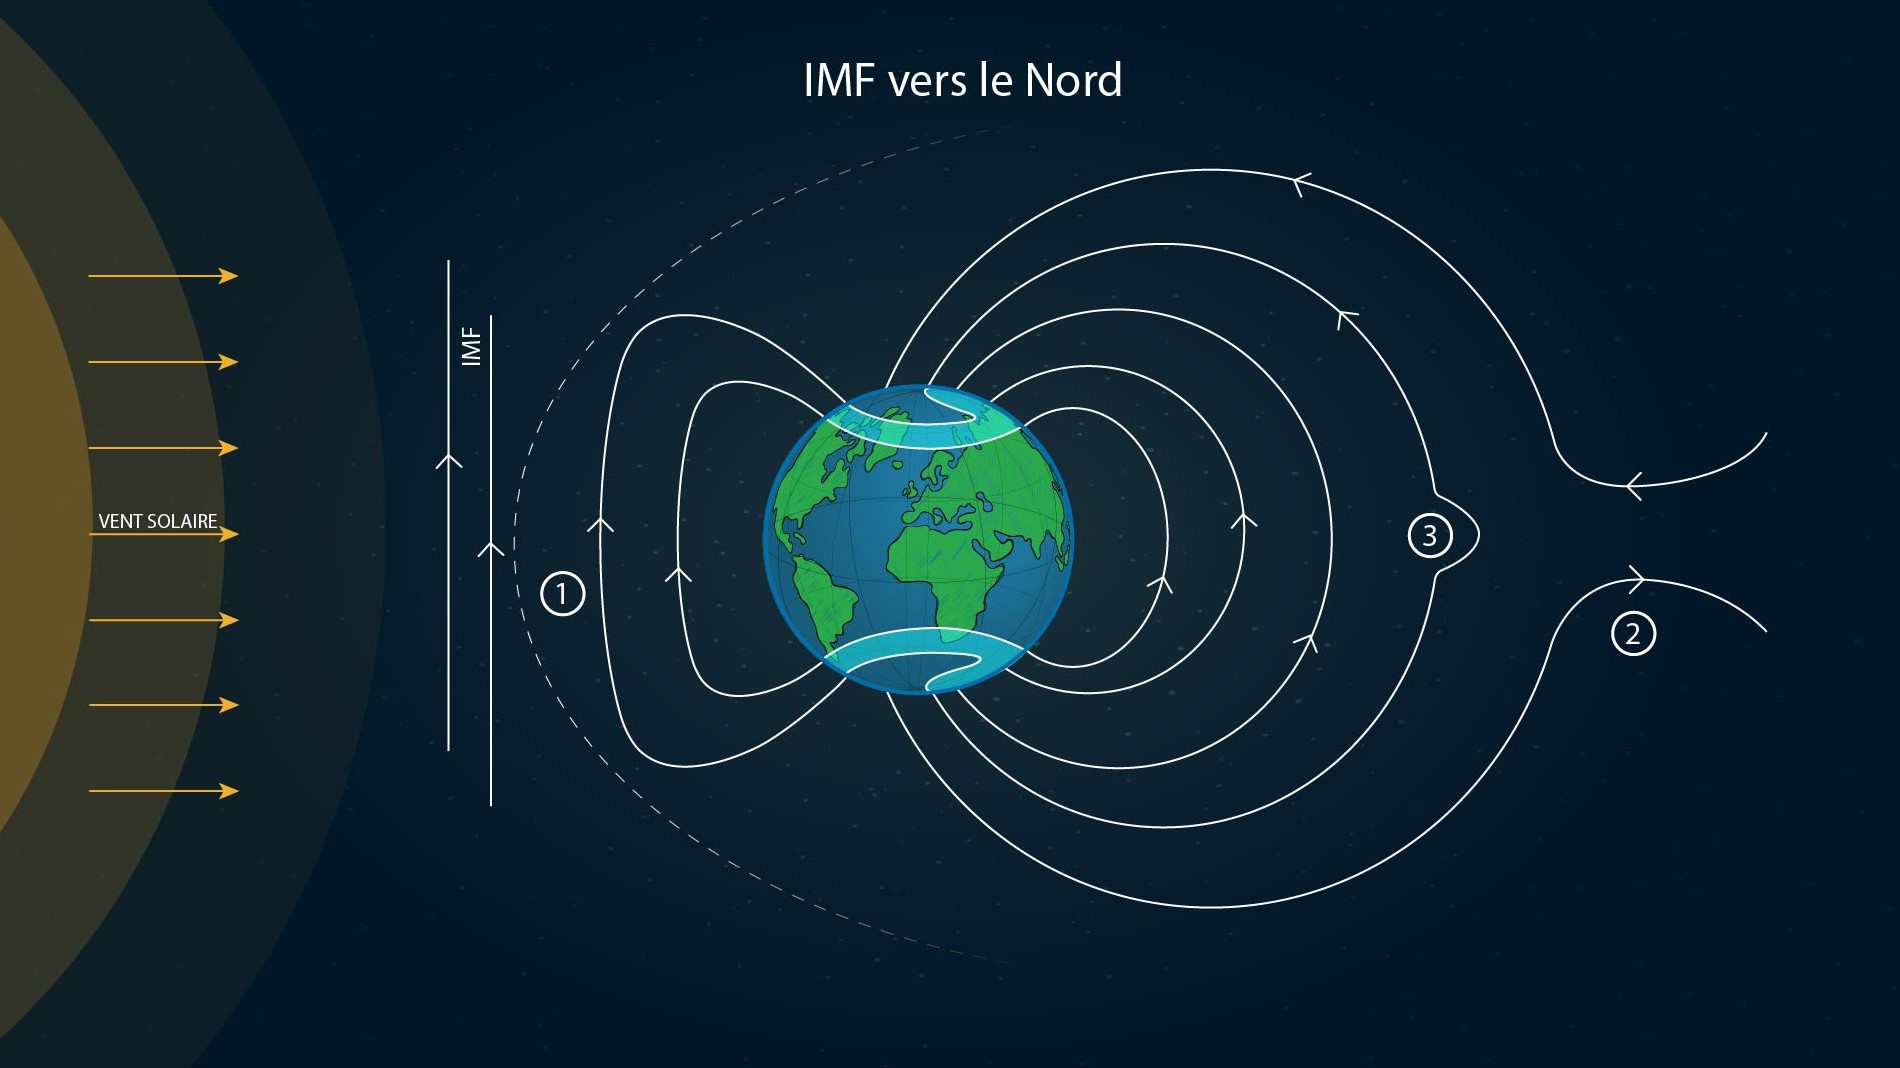 Northward IMF